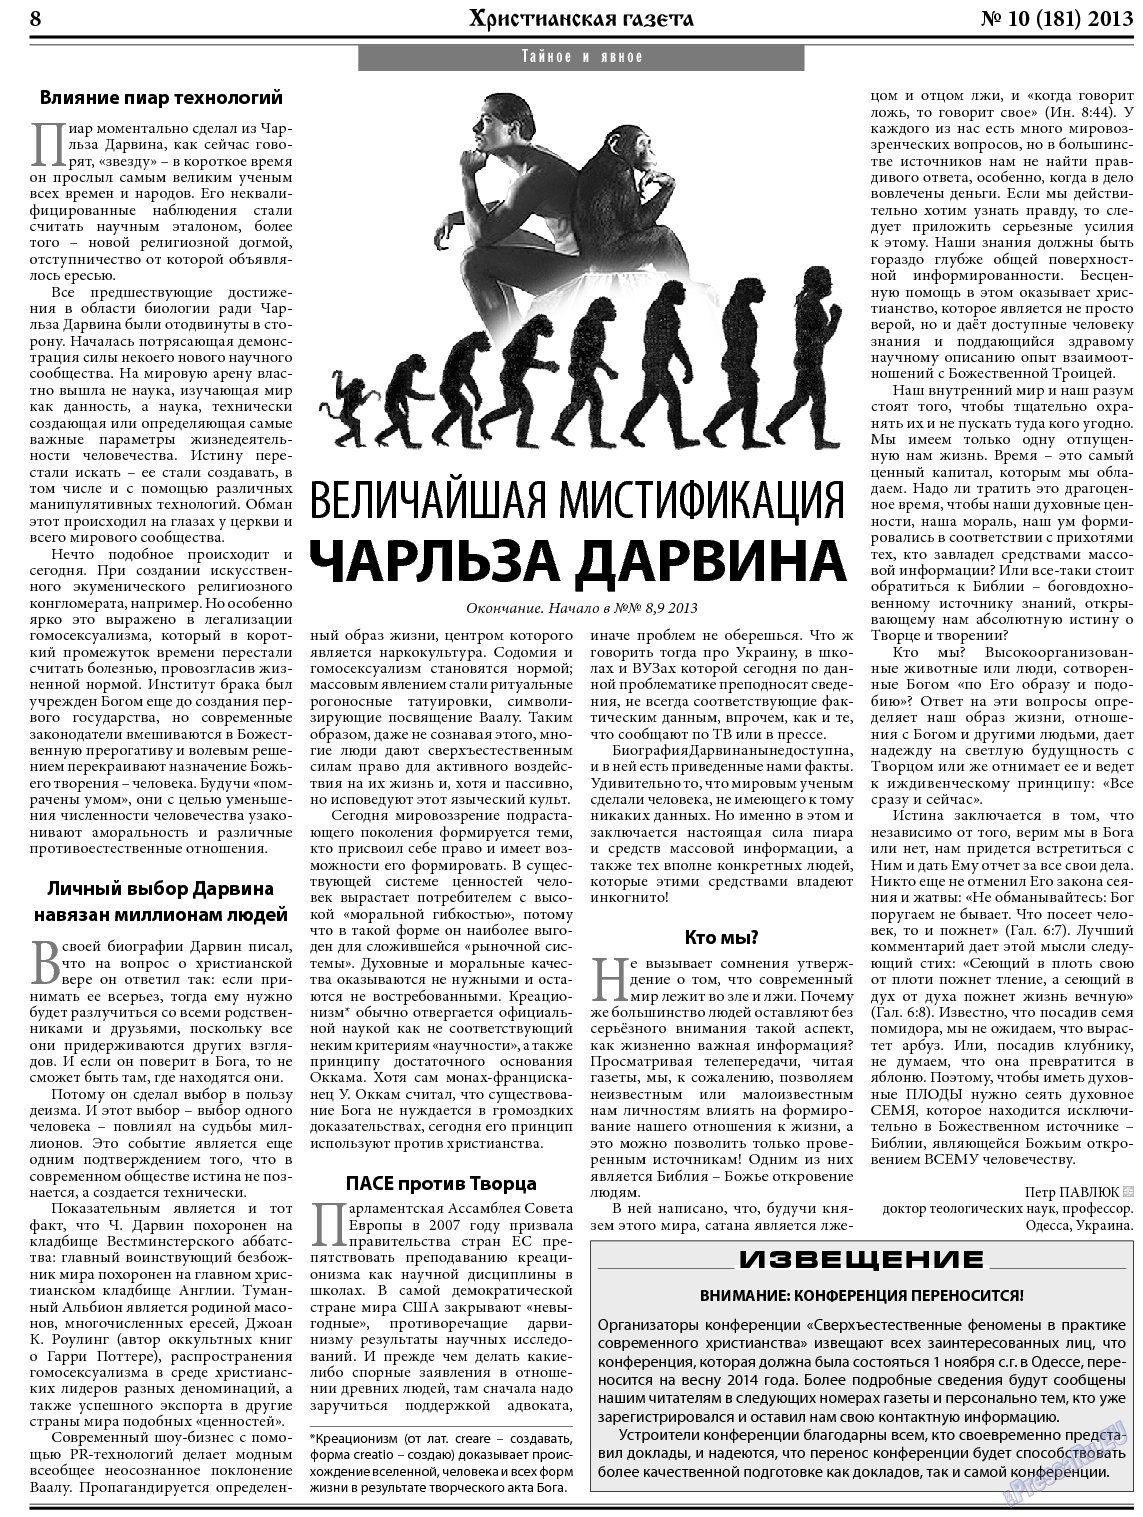 Христианская газета, газета. 2013 №10 стр.8